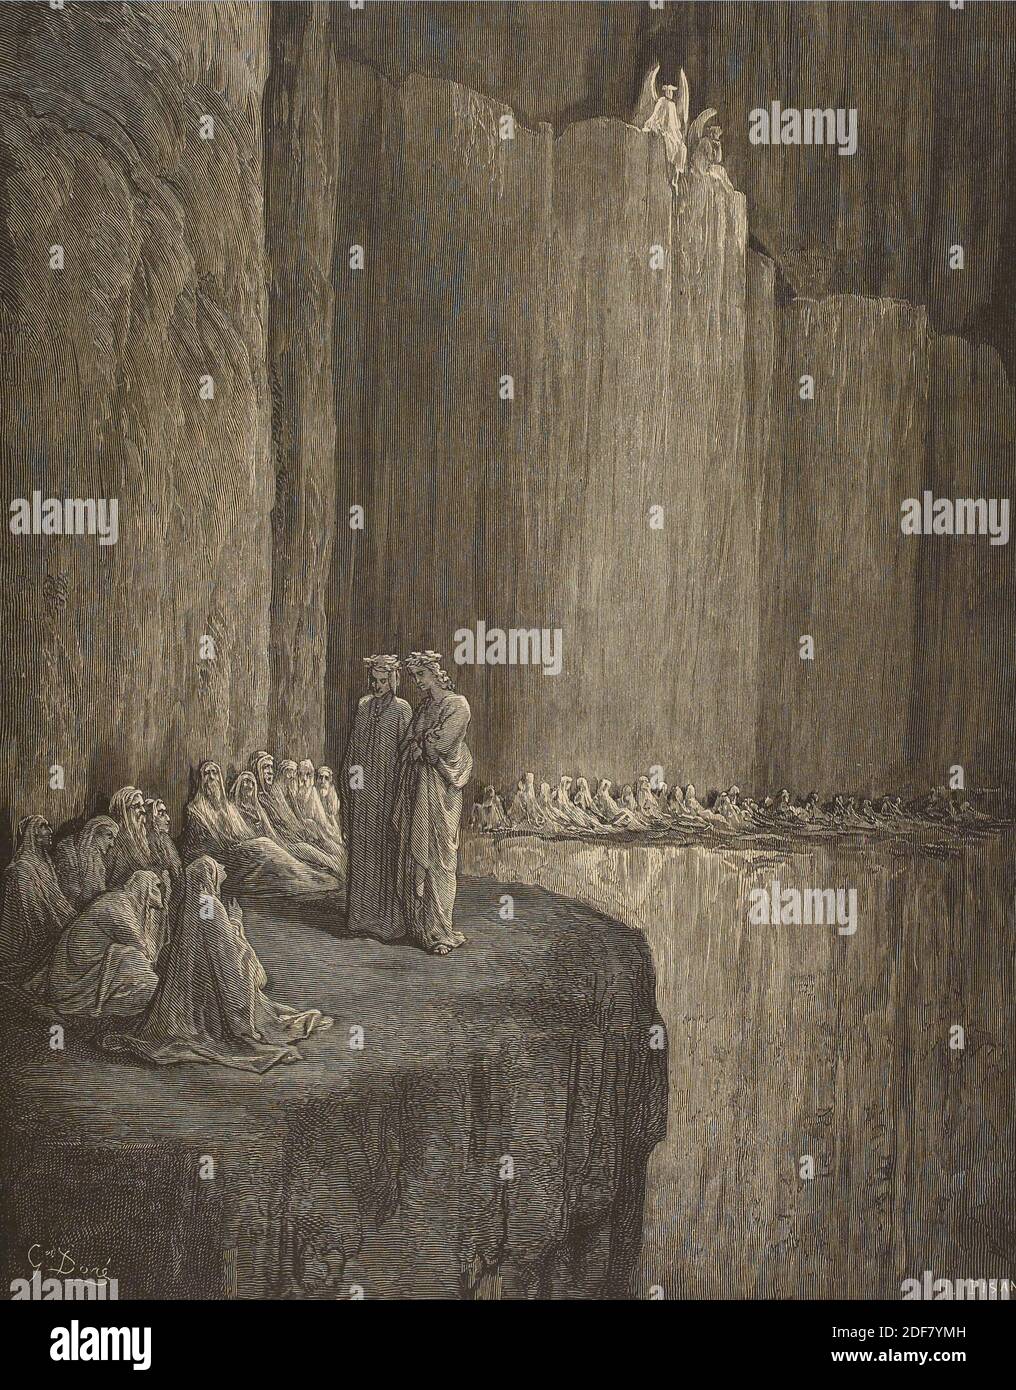 Dante - Divina Commedia - Purgatorio - Ilustración de Gustave Dorè - Canto XIII - Sapia Foto de stock